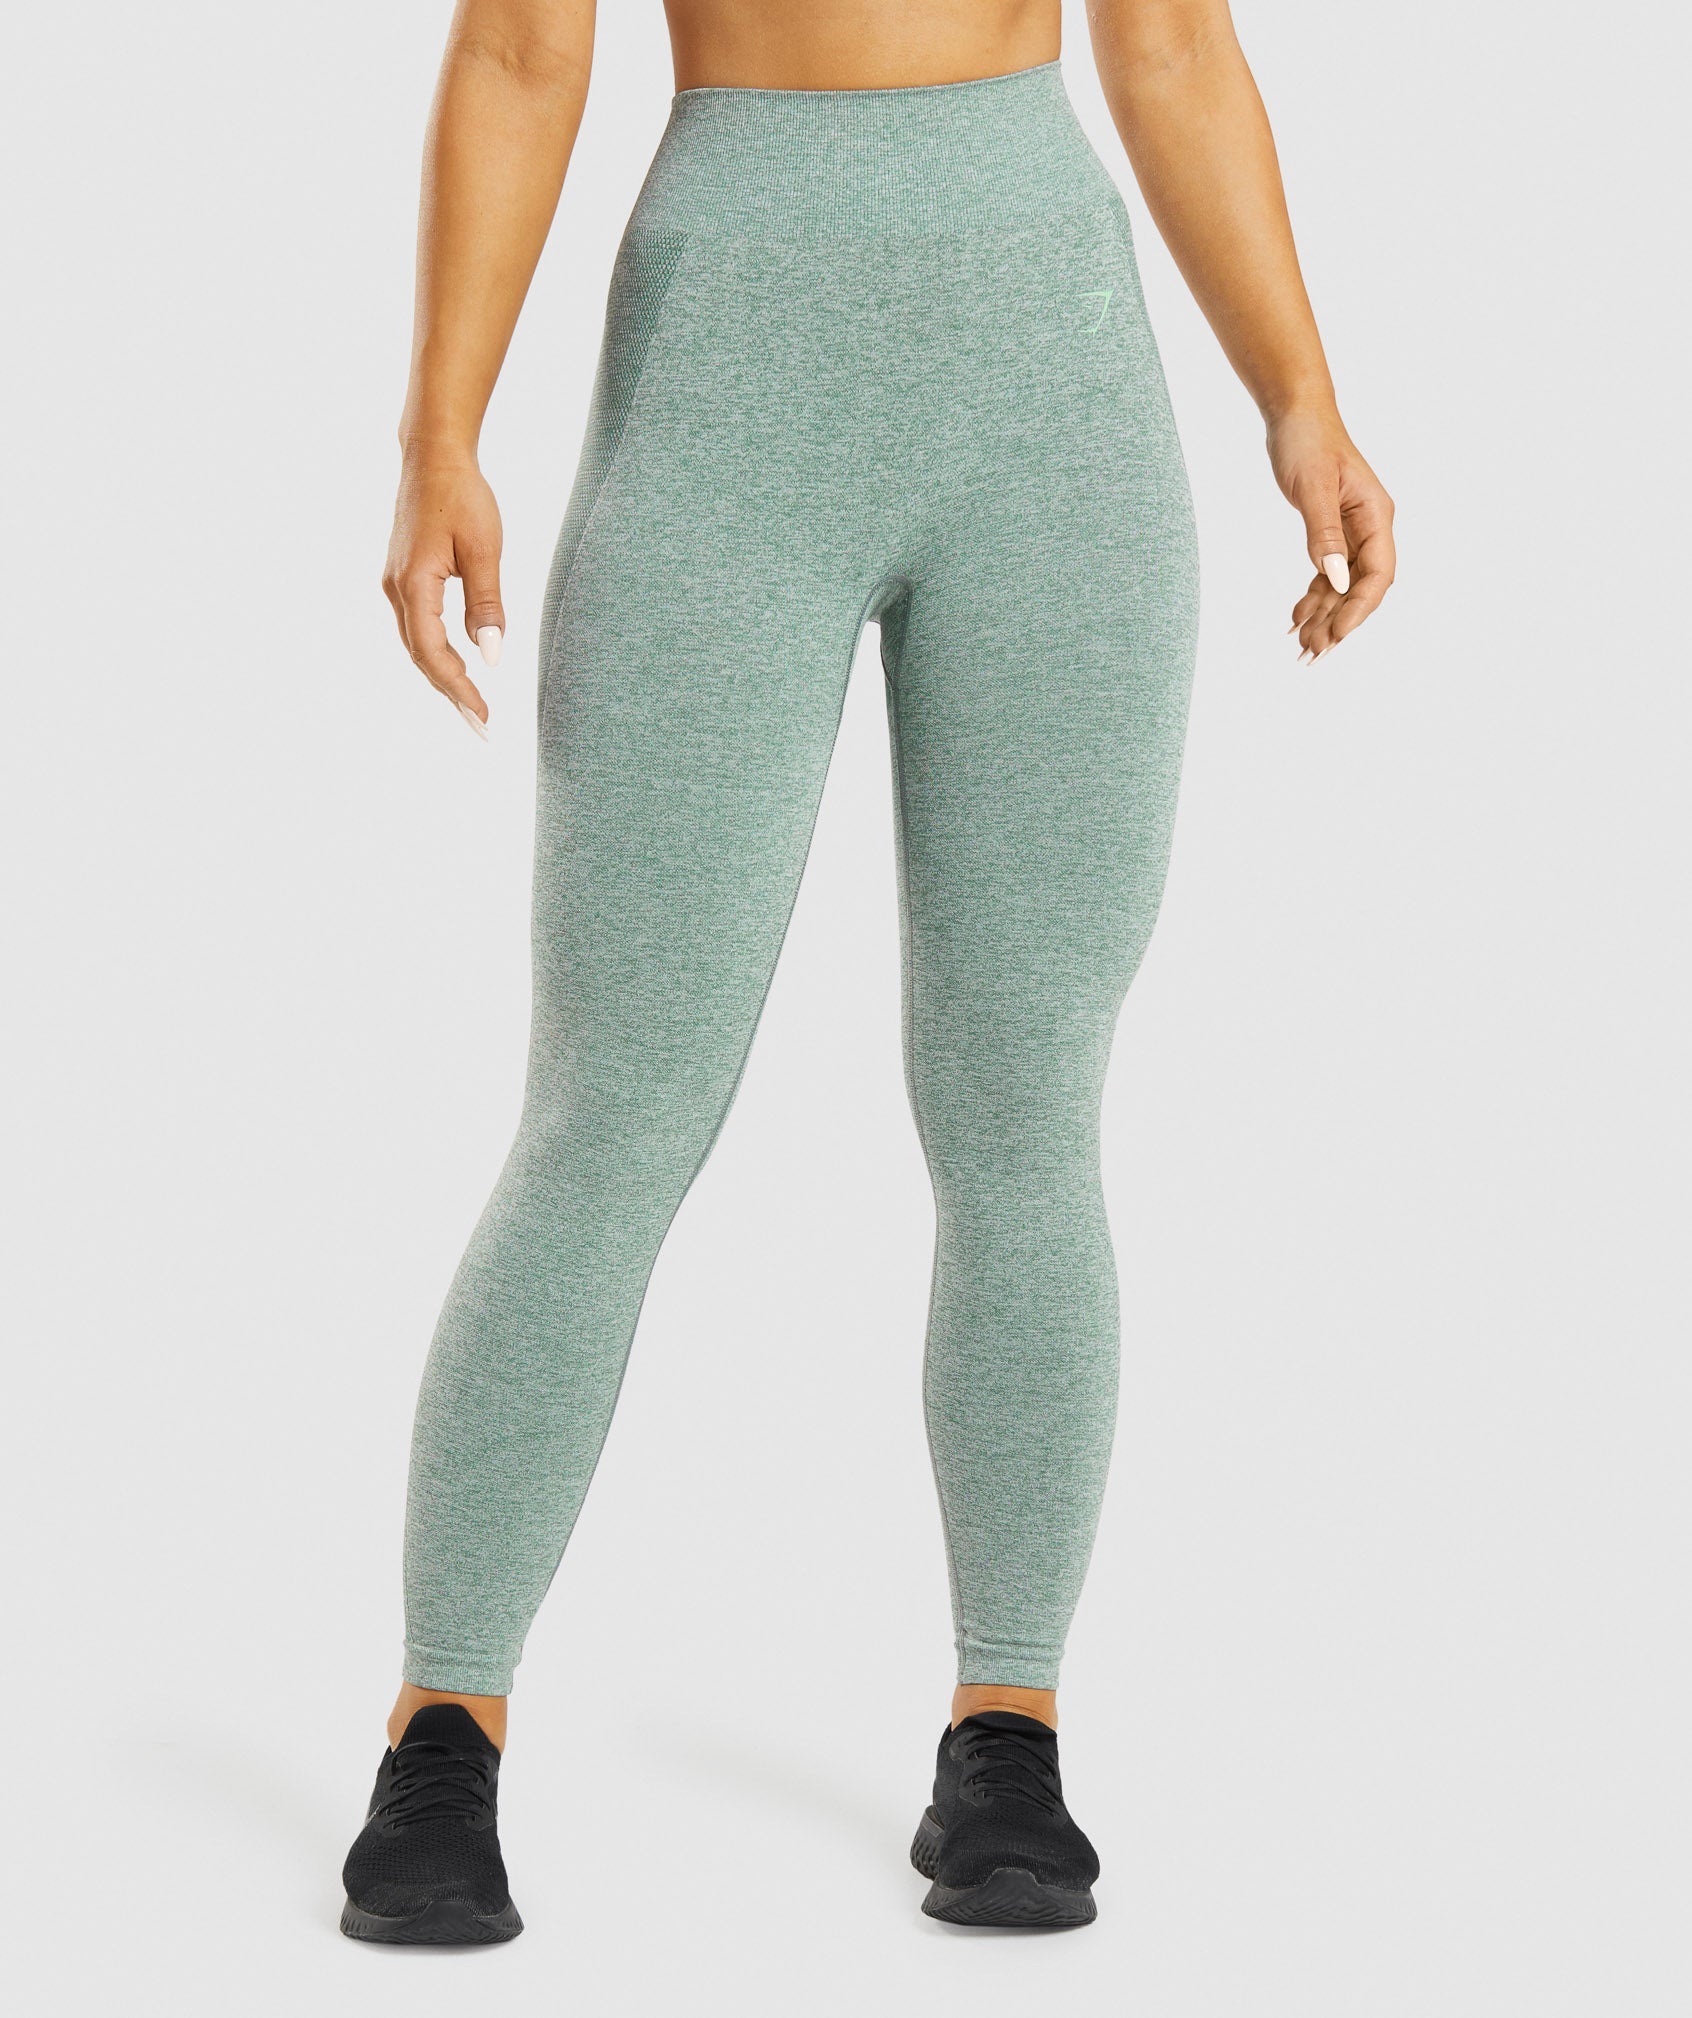 gymshark flex leggings - size small – good market thrift store